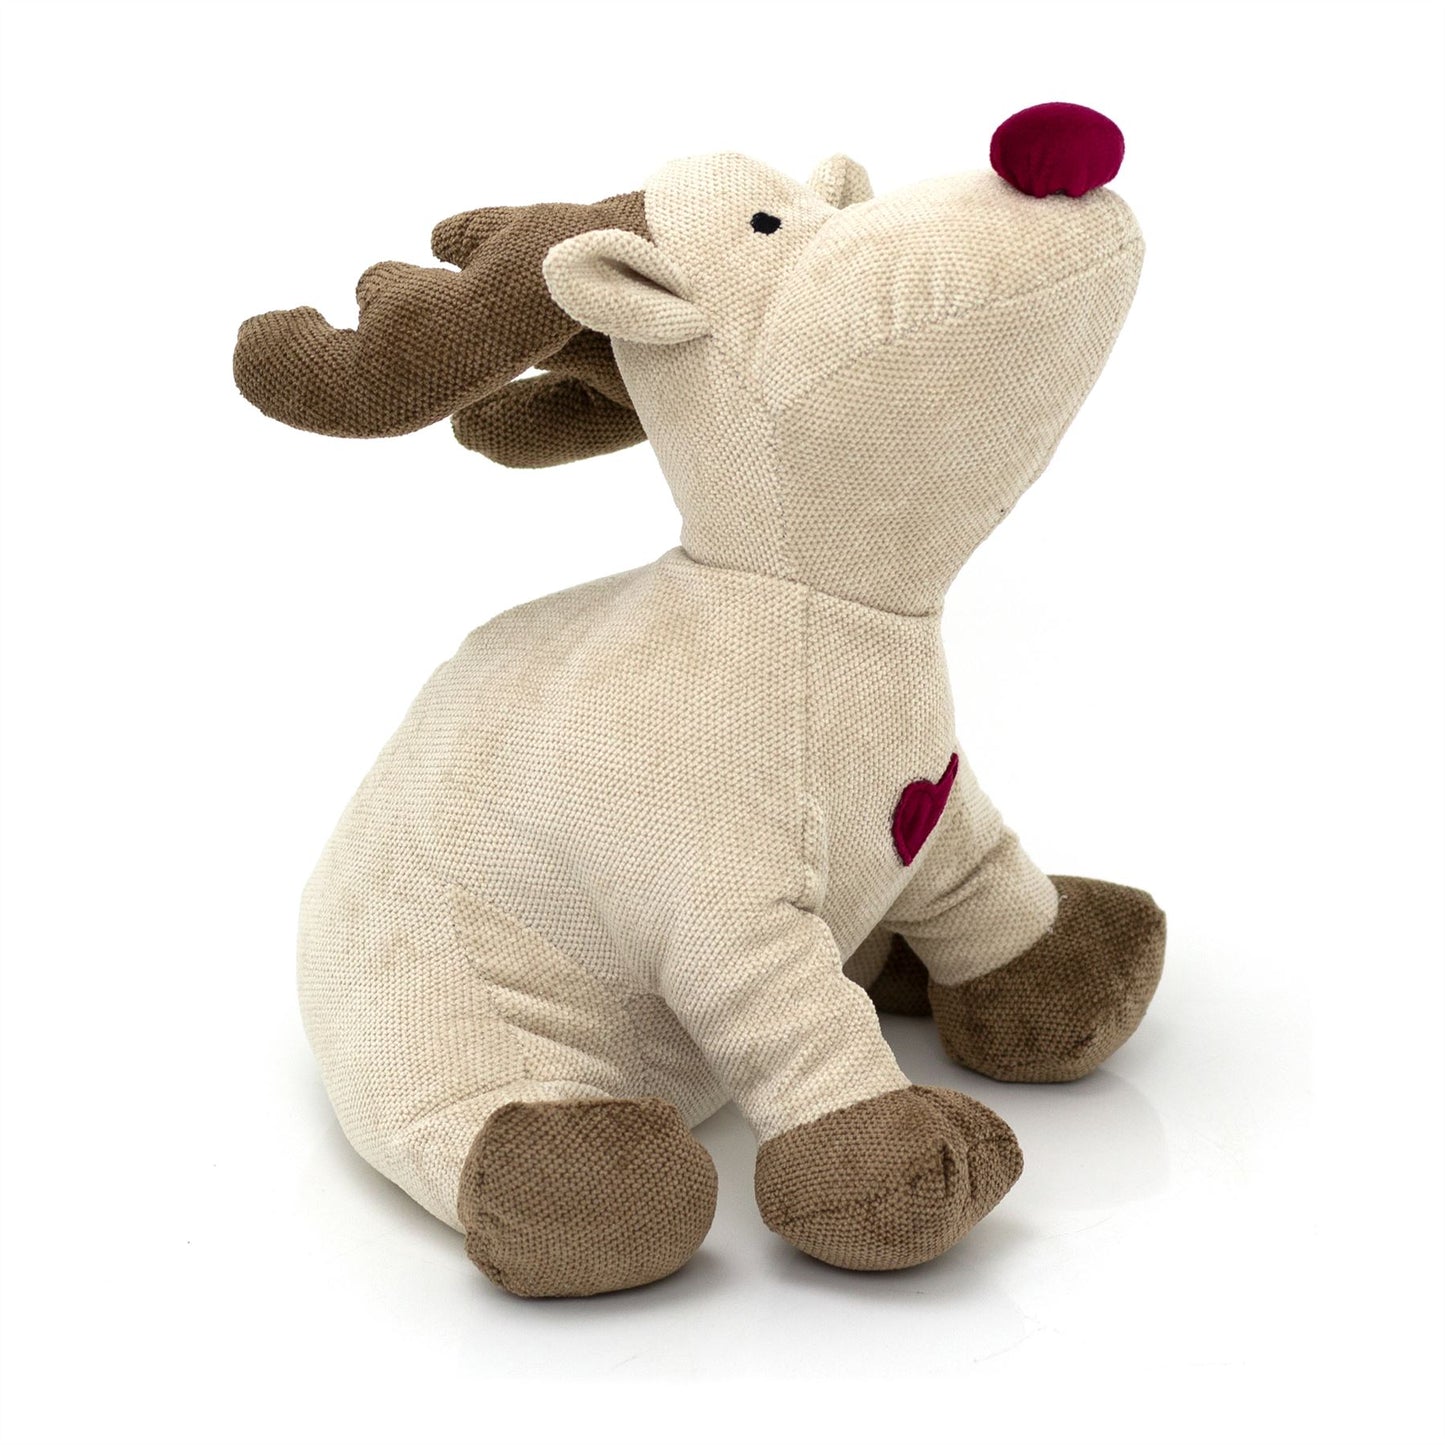 Rudy Red Nosed Reindeer Doorstop | Fabric Animal Door Stop Christmas Doorstop